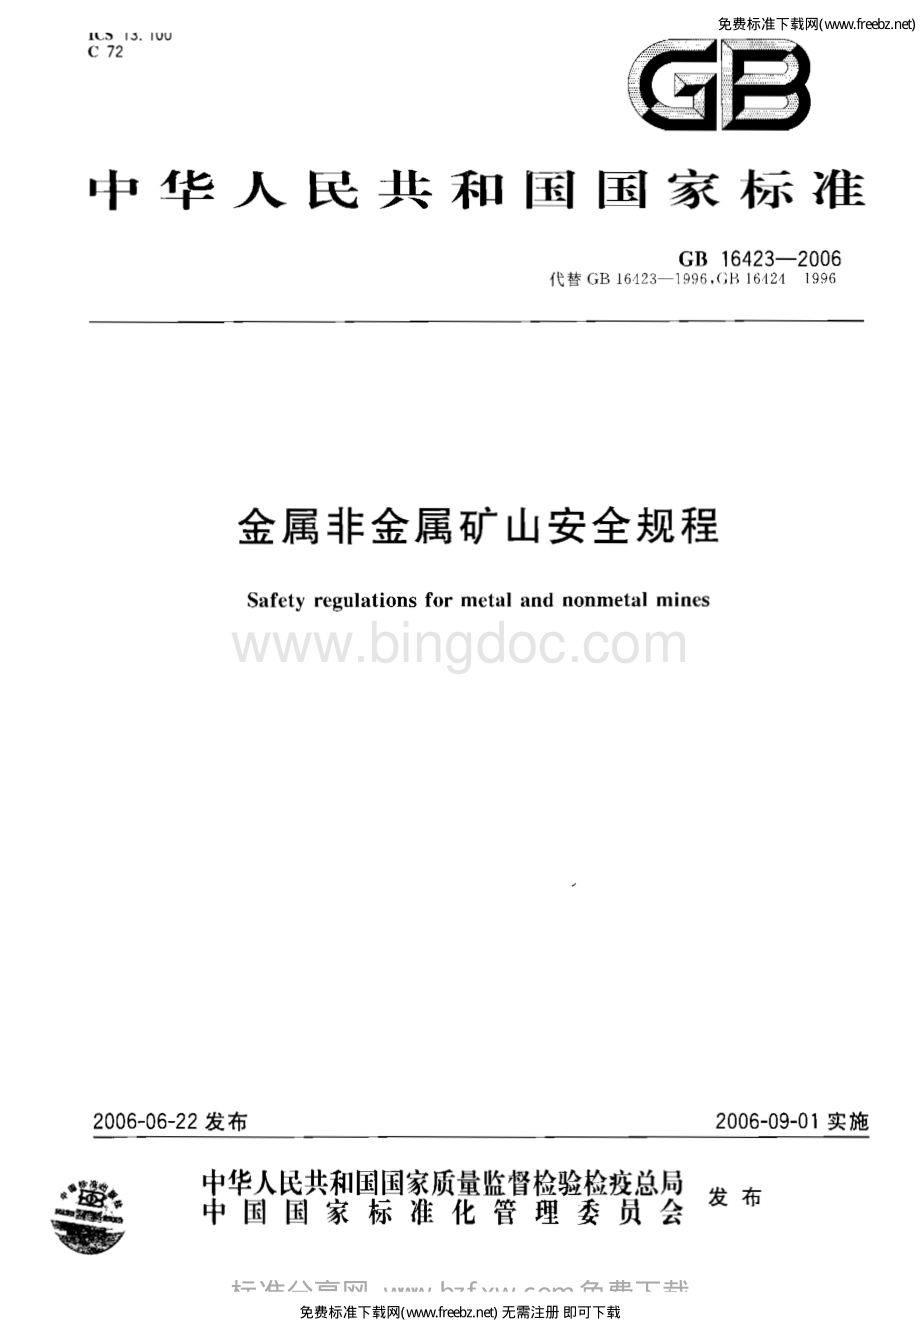 GB 16423-2006 金属非金属矿山安全规程.pdf